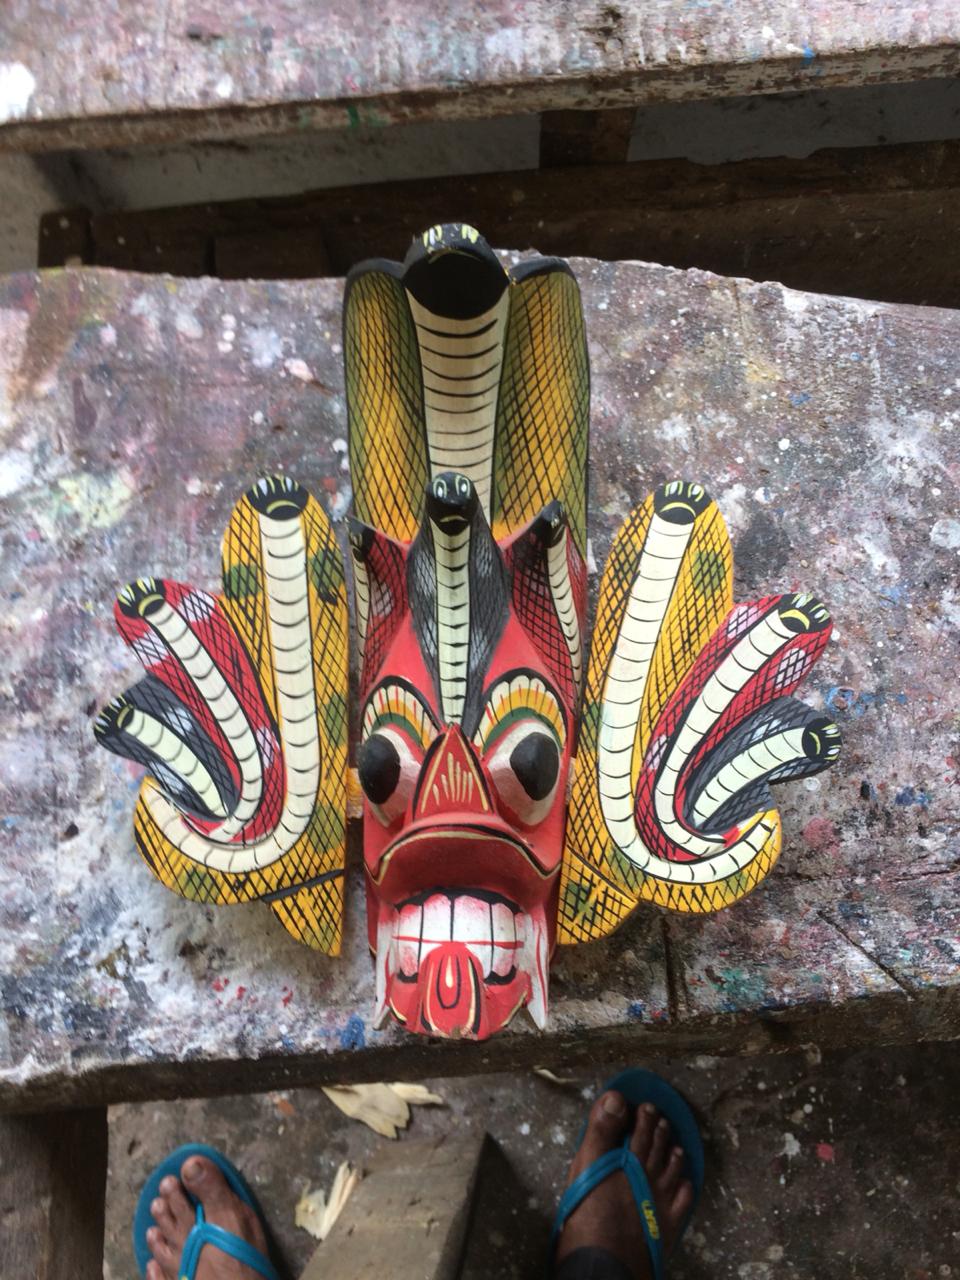 Handmade Wooden Mask souvenir 15*15 cm, Sri Lanka